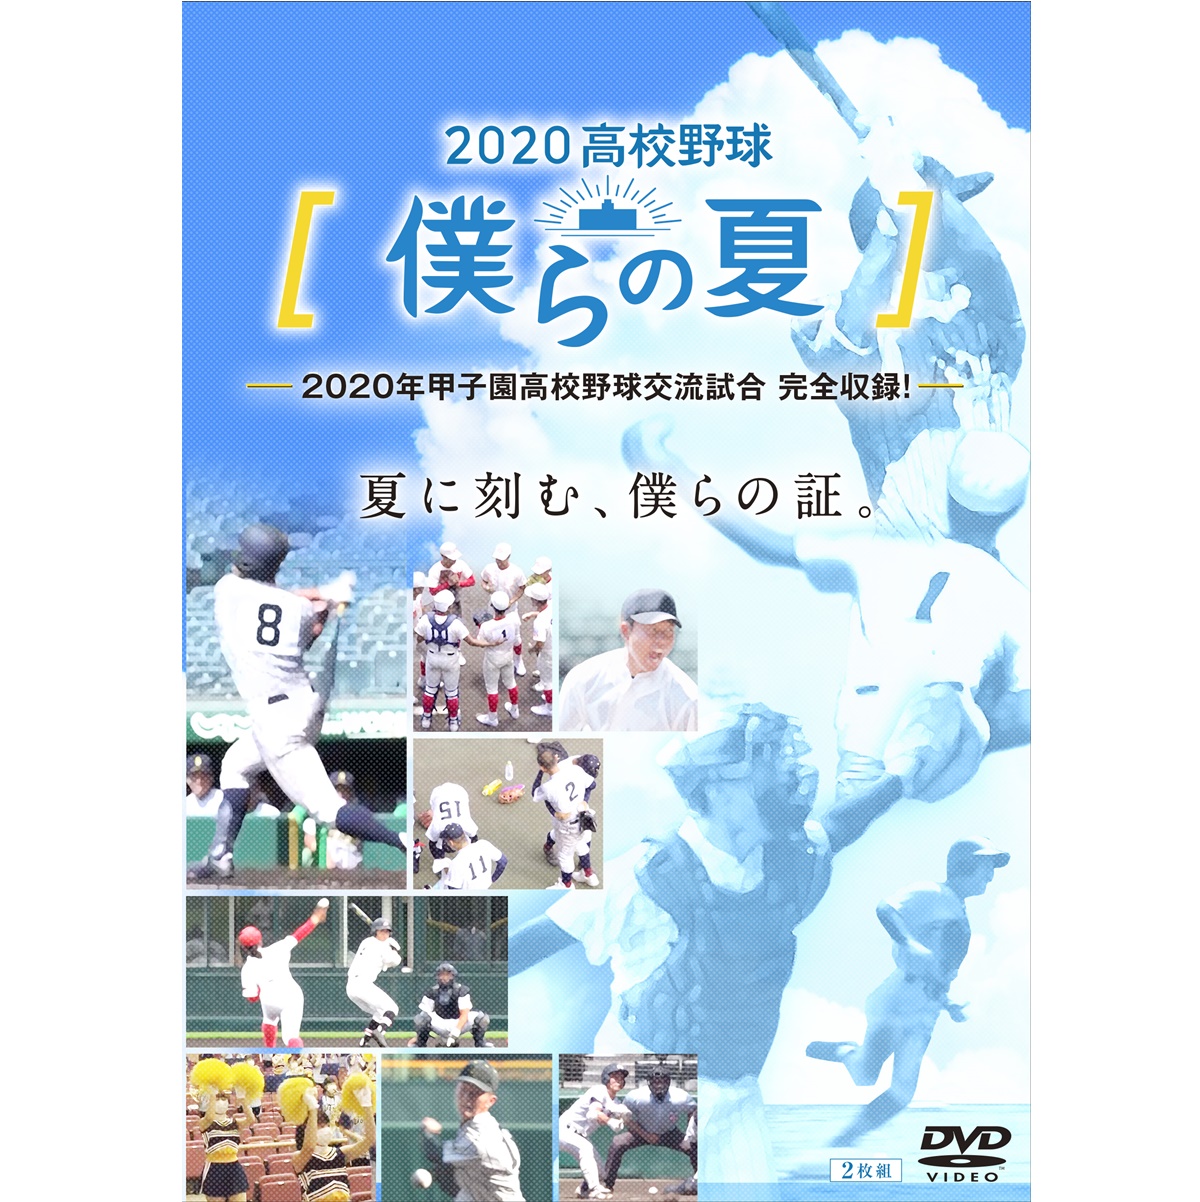 DVD「2020高校野球 僕らの夏」